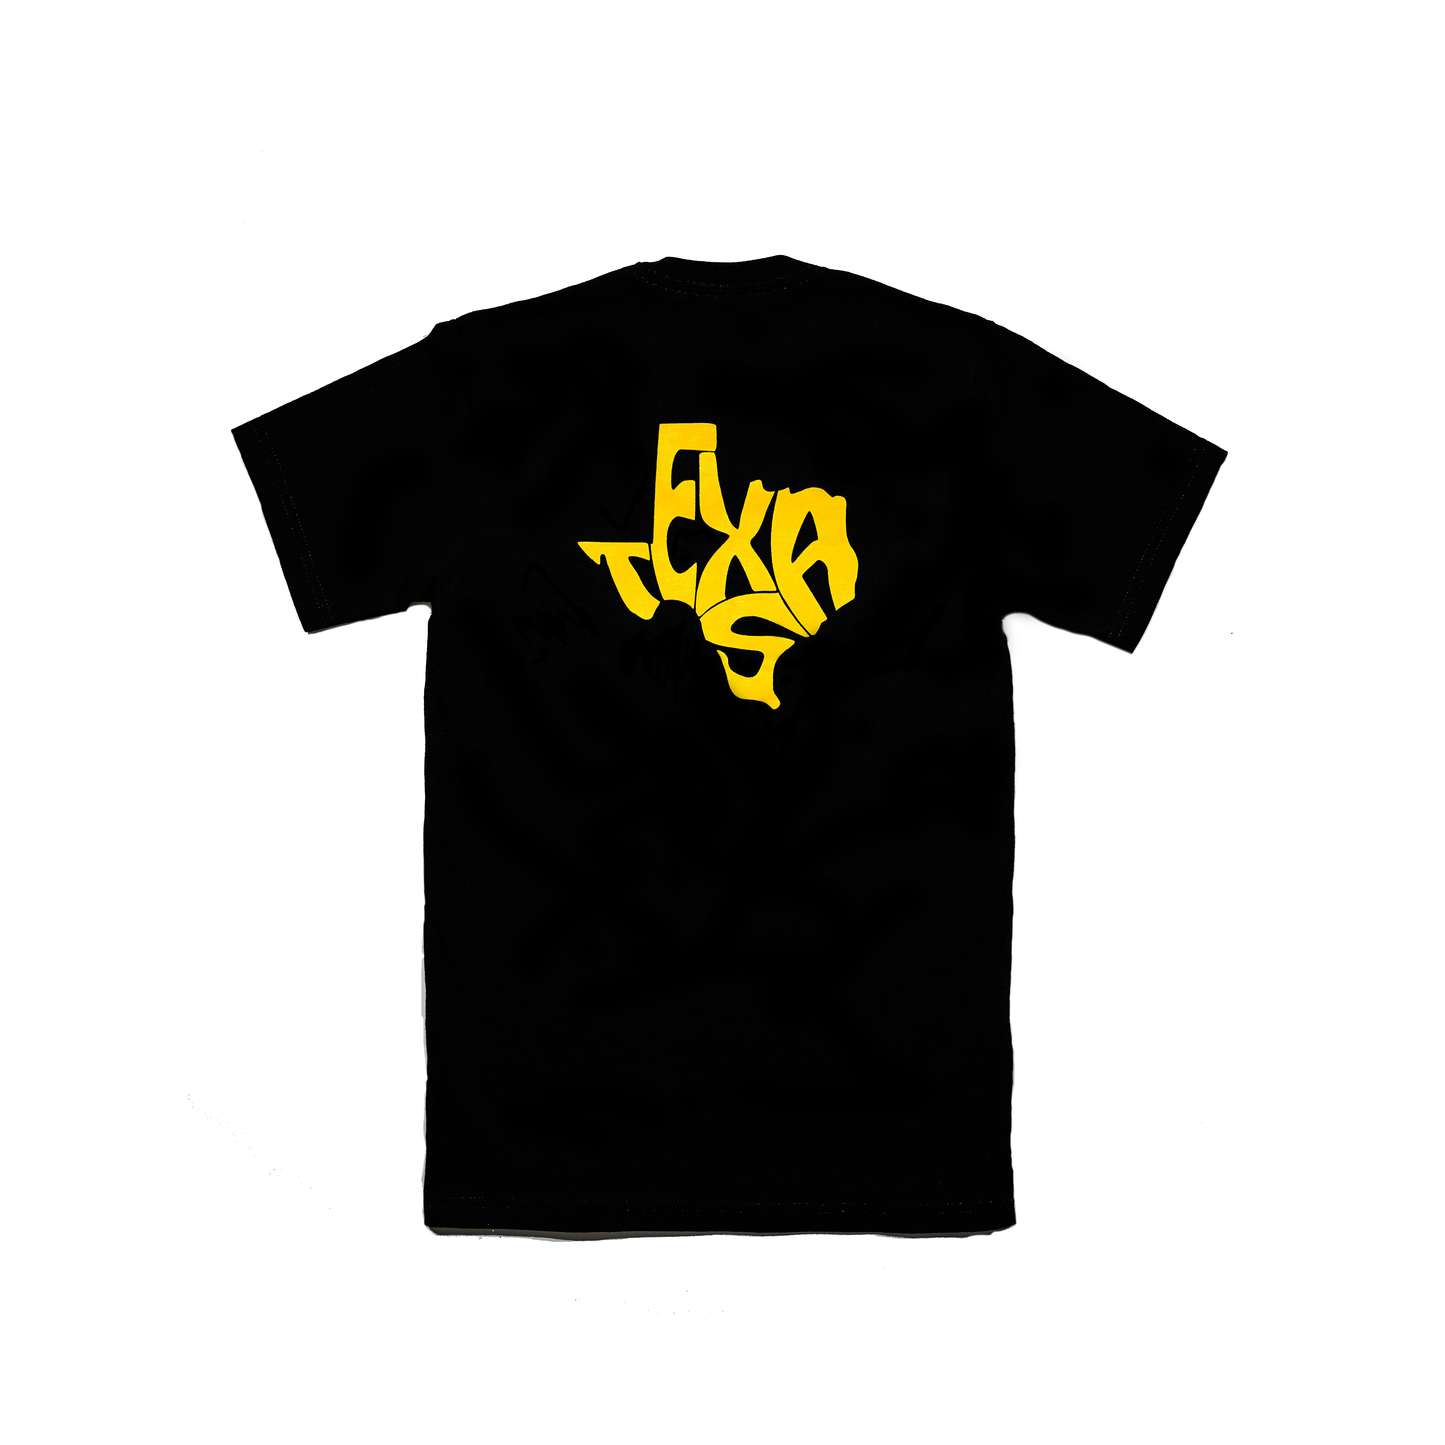 TXHSFB T-Shirt Black/Yellow